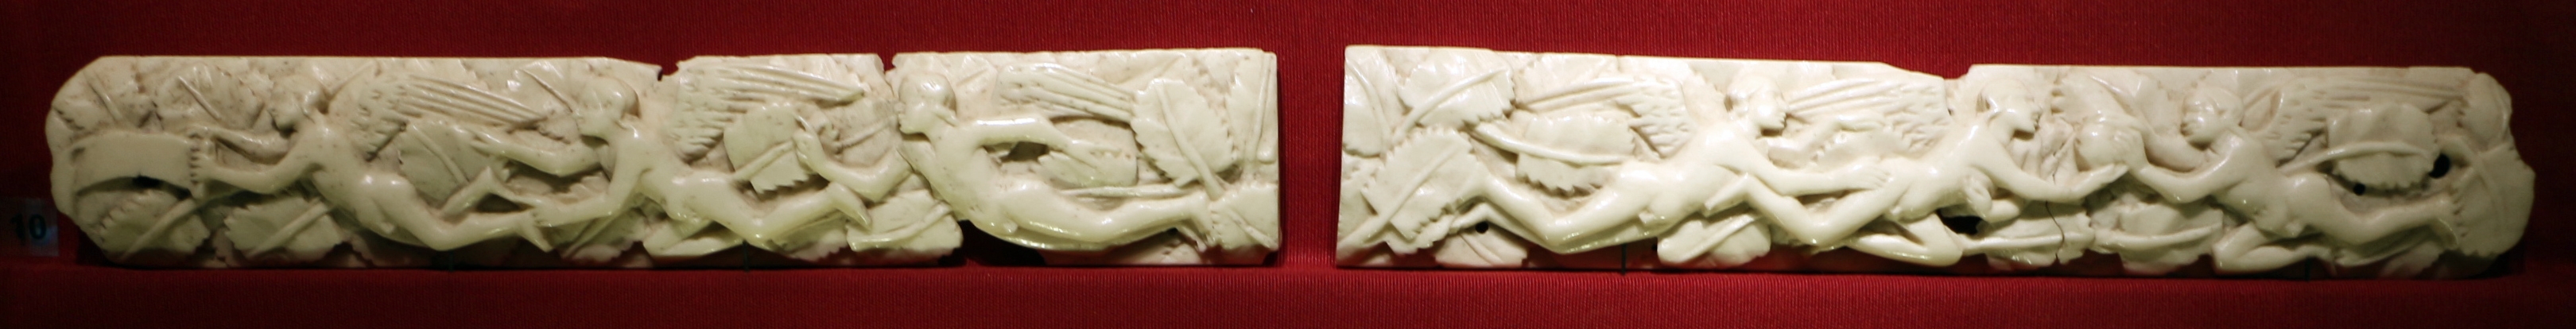 Bottega di baldassarre degli embriachi, due lastre con geni alati, osso, 1390-1410 ca - Sailko